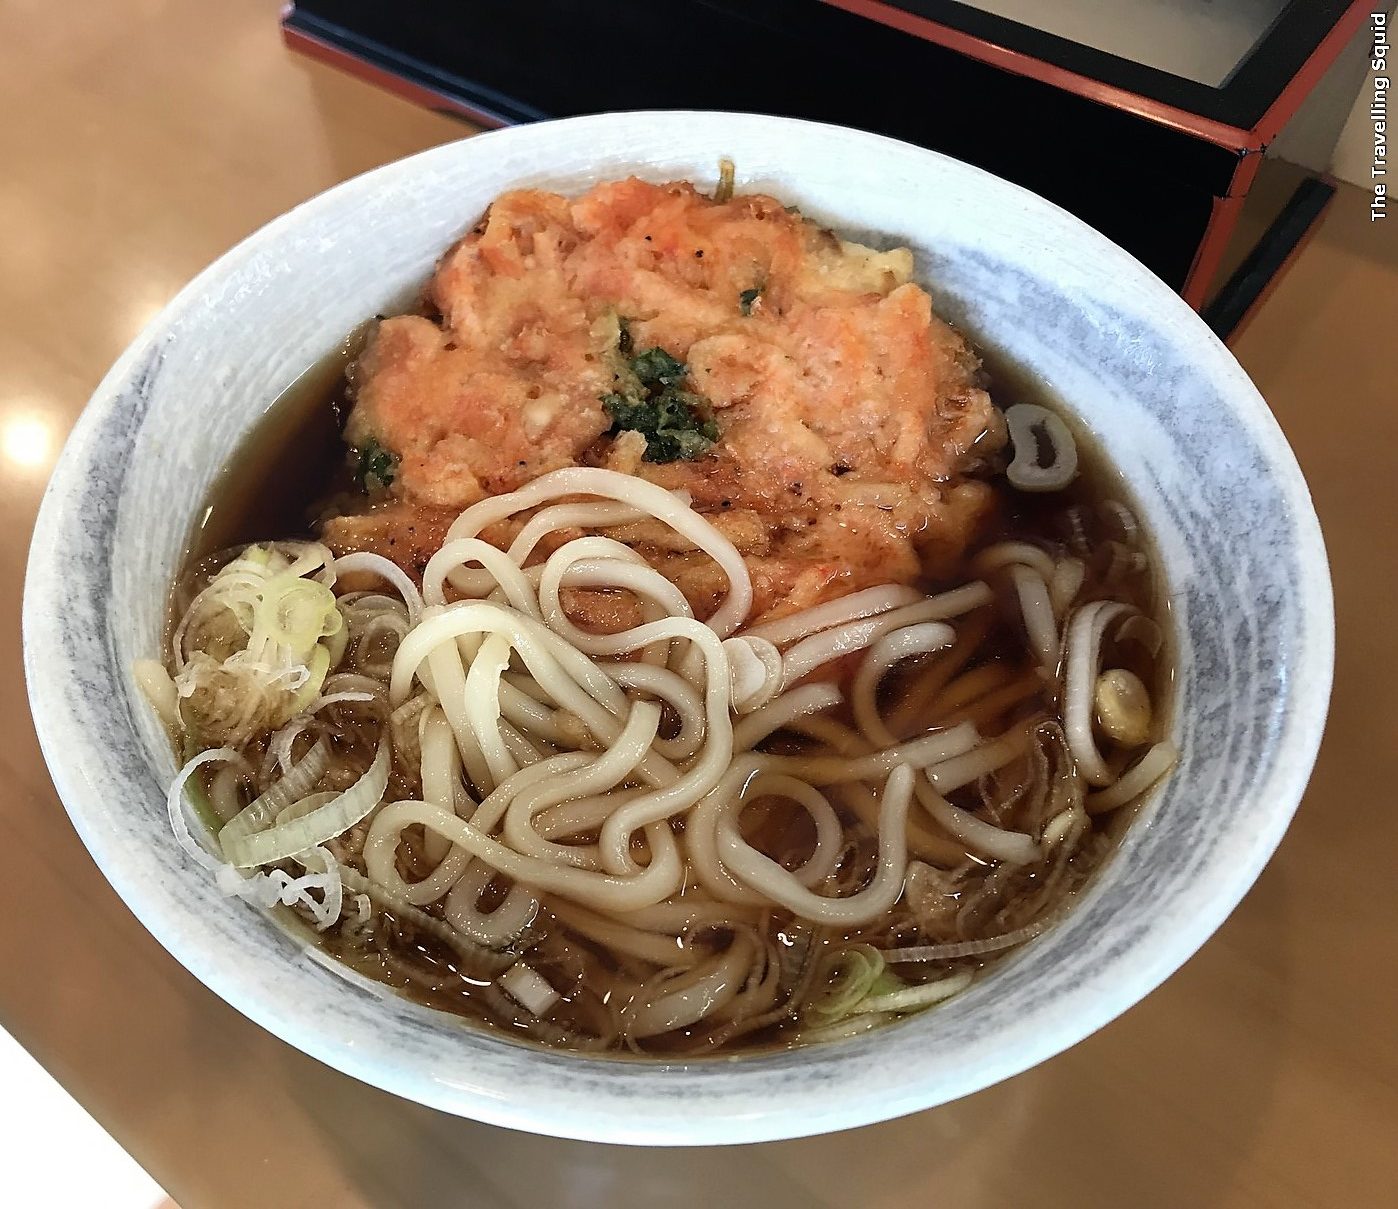  soba noodles at Mishima Station in Japan